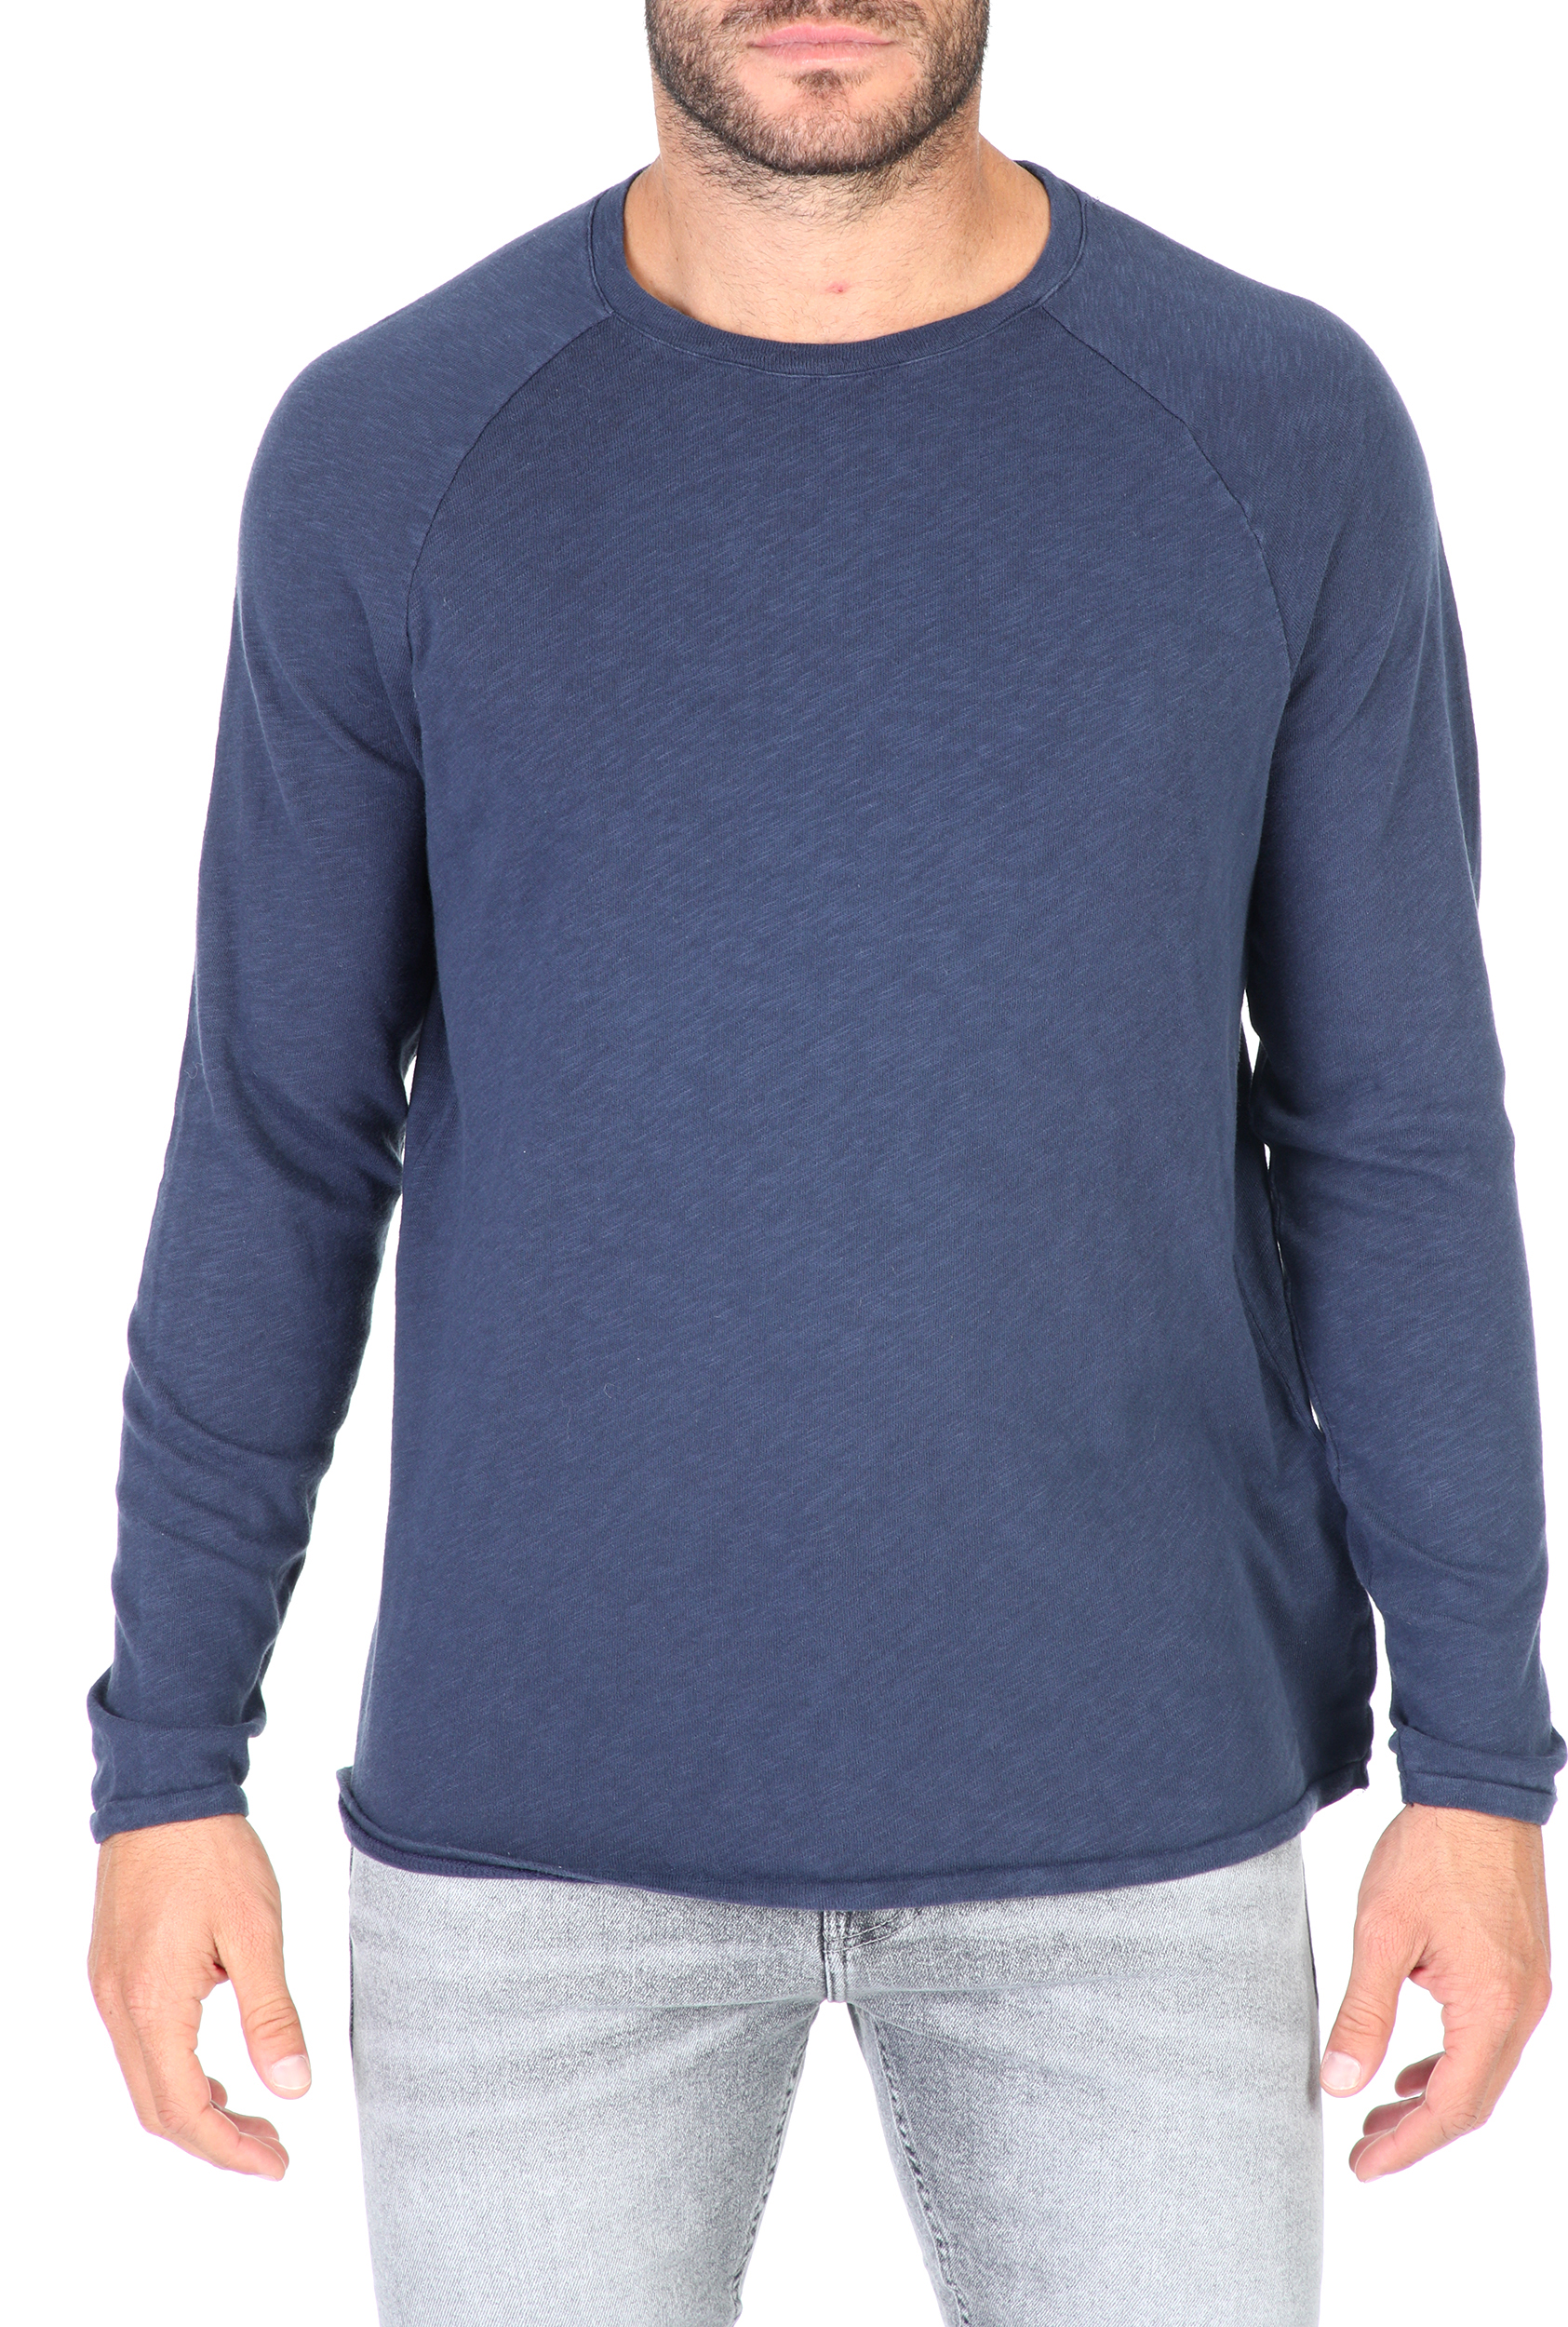 Ανδρικά/Ρούχα/Μπλούζες/Μακρυμάνικες AMERICAN VINTAGE - Ανδρική μακρυμάνικη μπλούζα AMERICAN VINTAGE μπλε